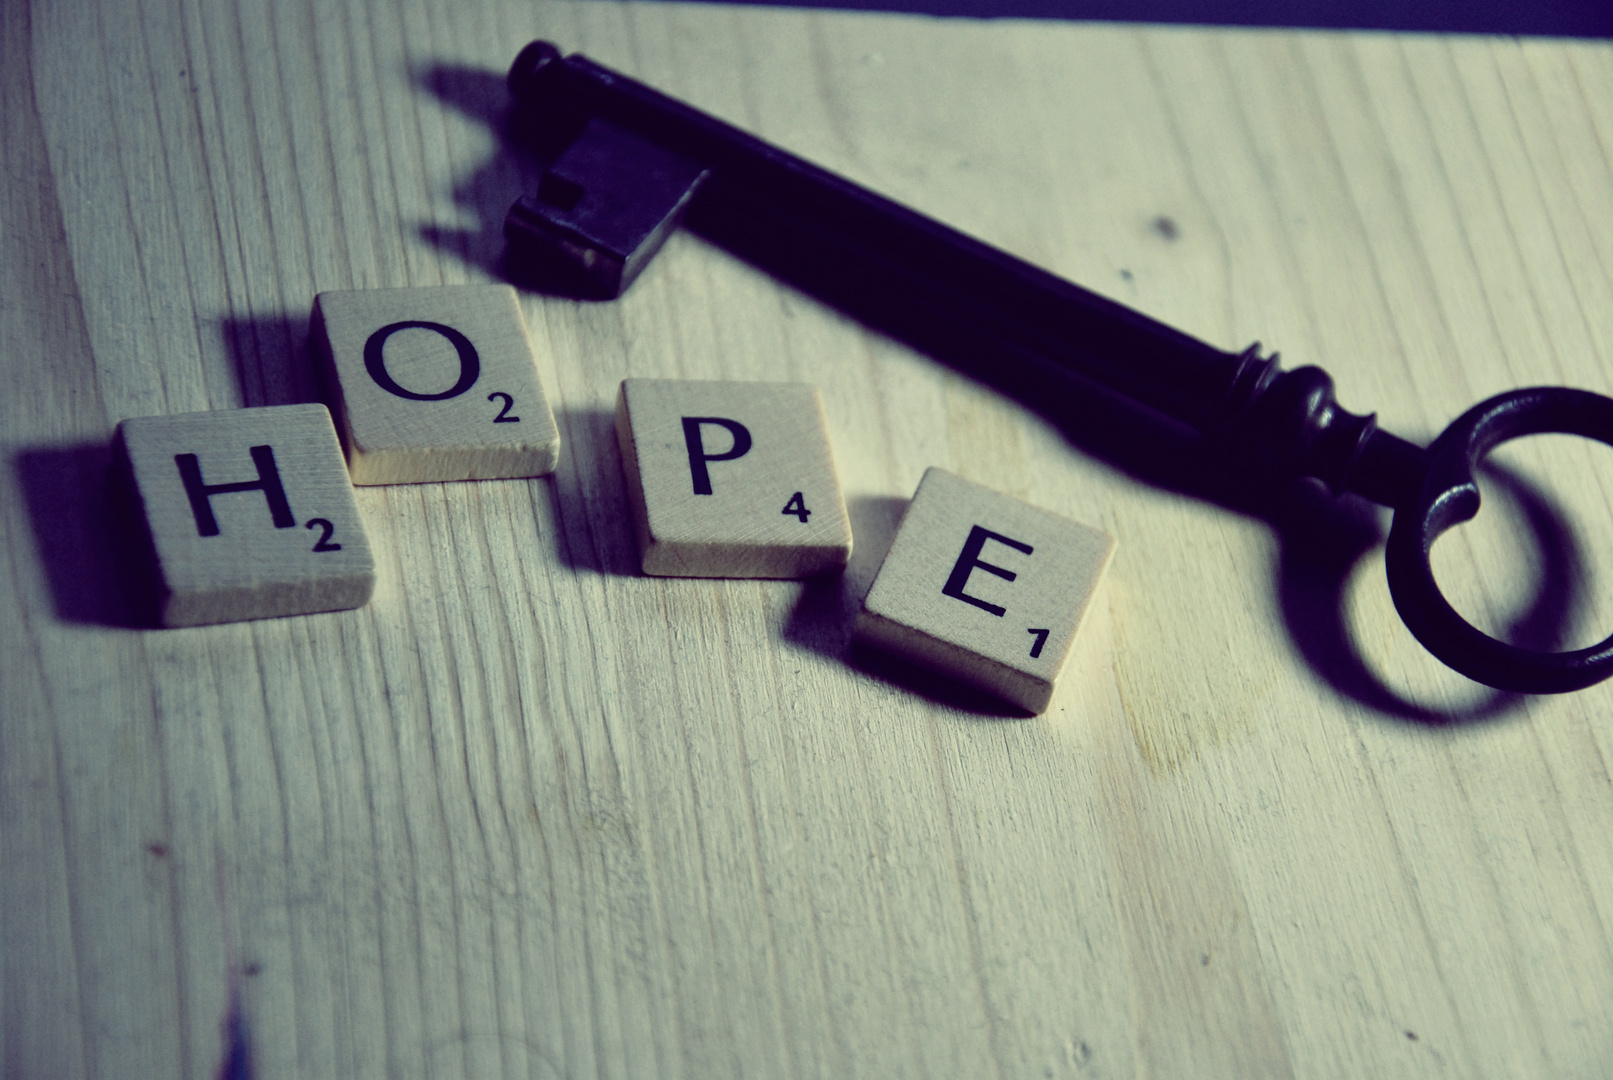 Hope :D